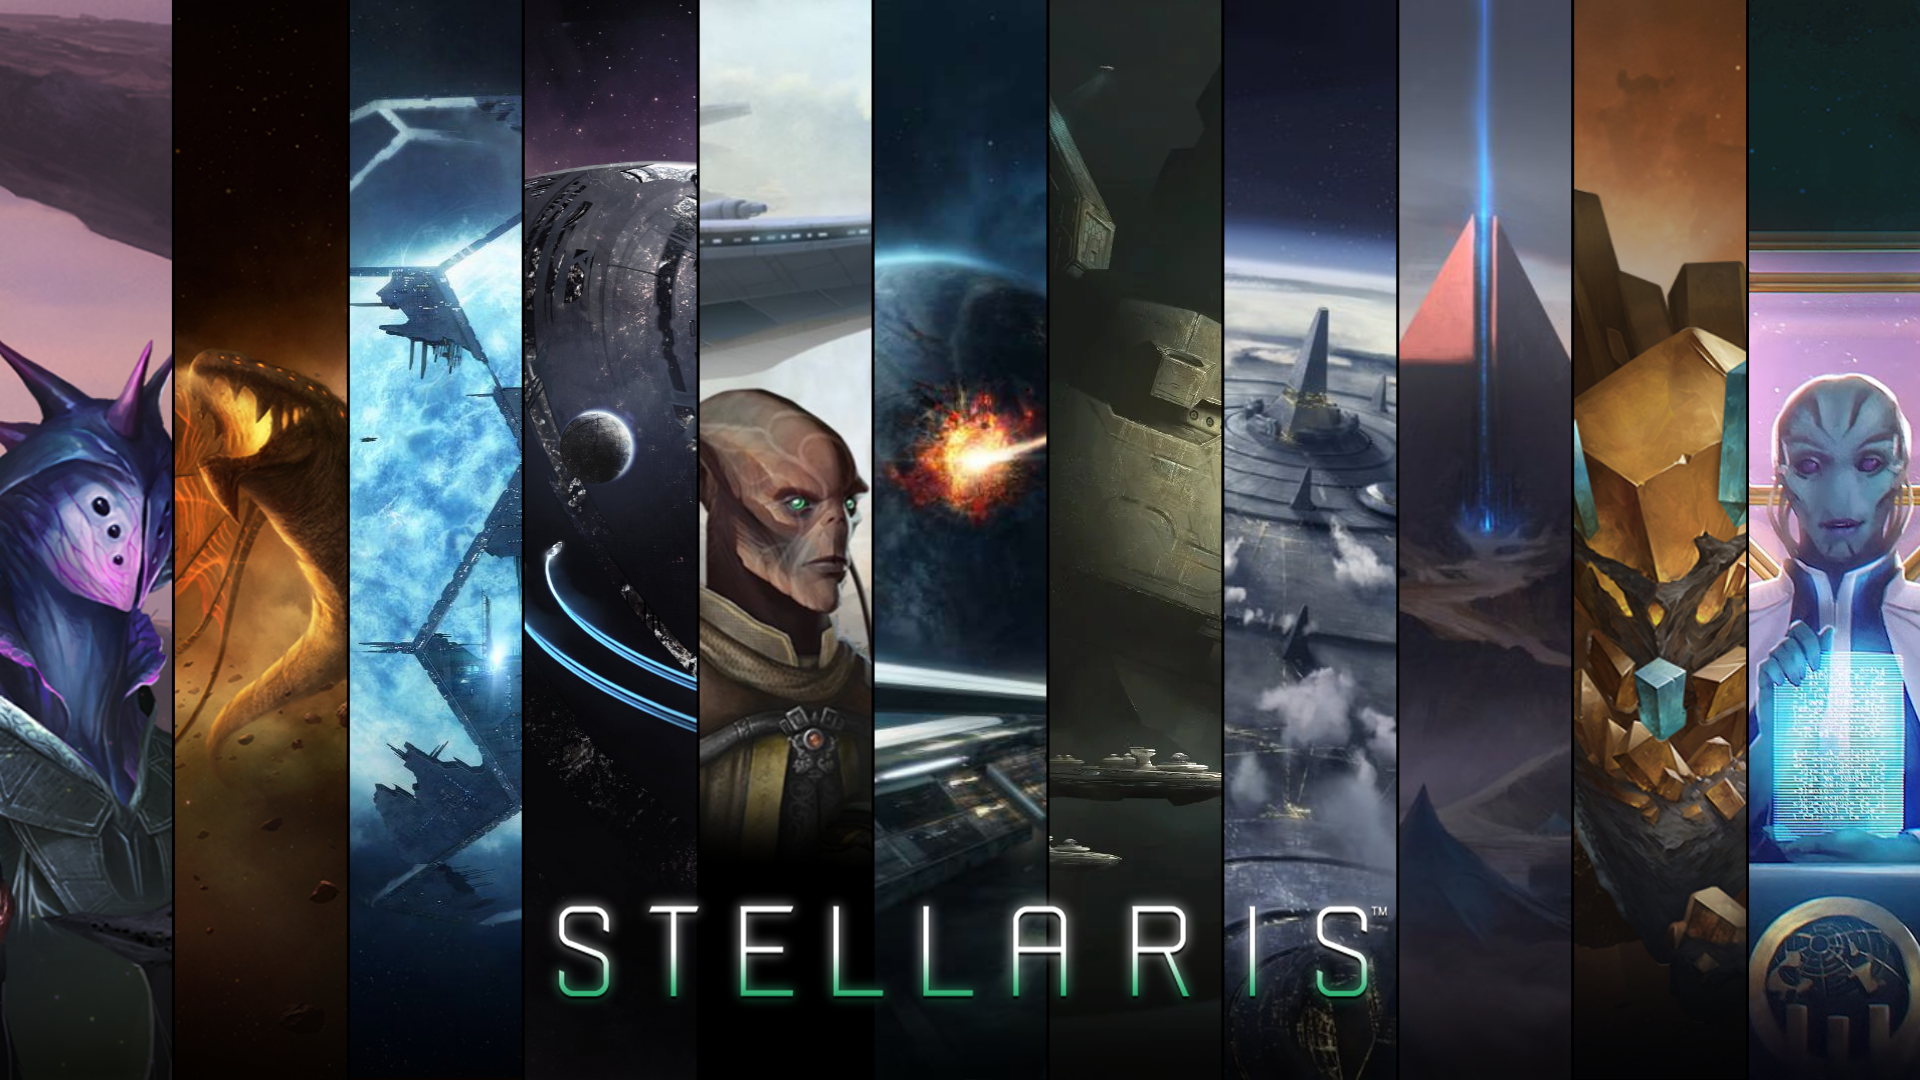 I made a Stellaris desktop wallpaper featuring each DLC